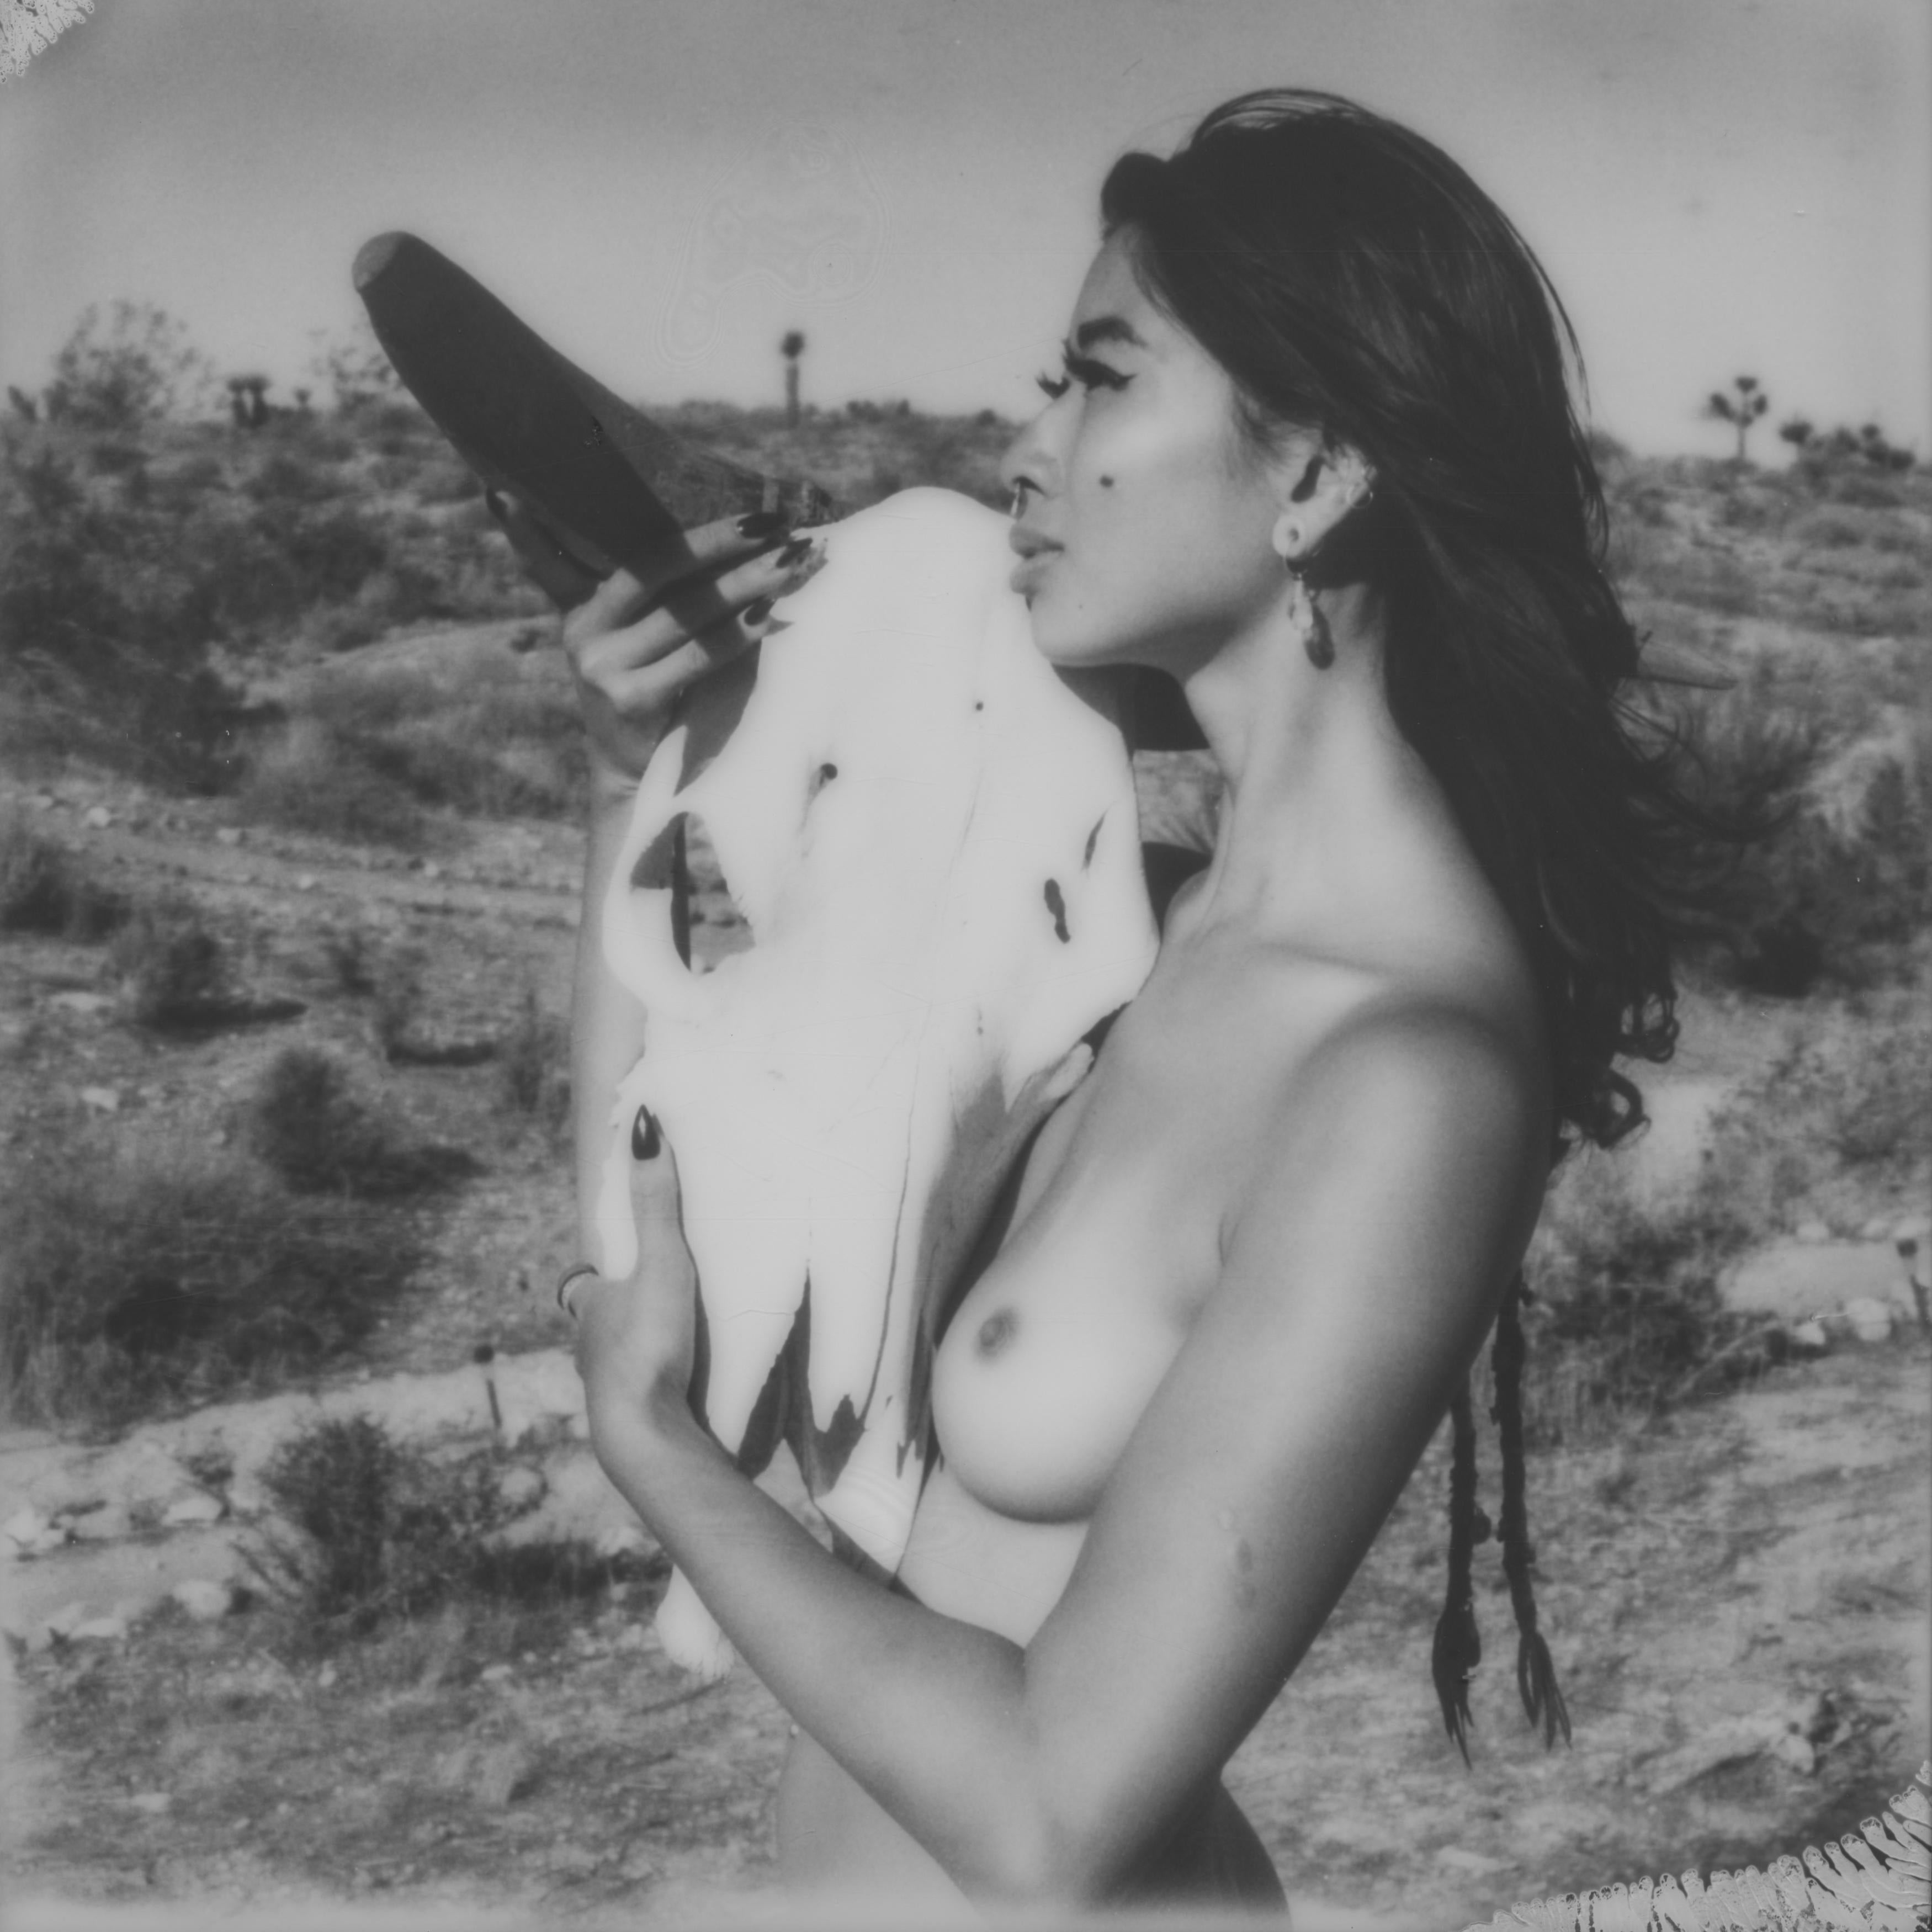 Kirsten Thys van den Audenaerde Nude Photograph - Beast - Contemporary, Polaroid, Nude, 21st Century, Joshua Tree